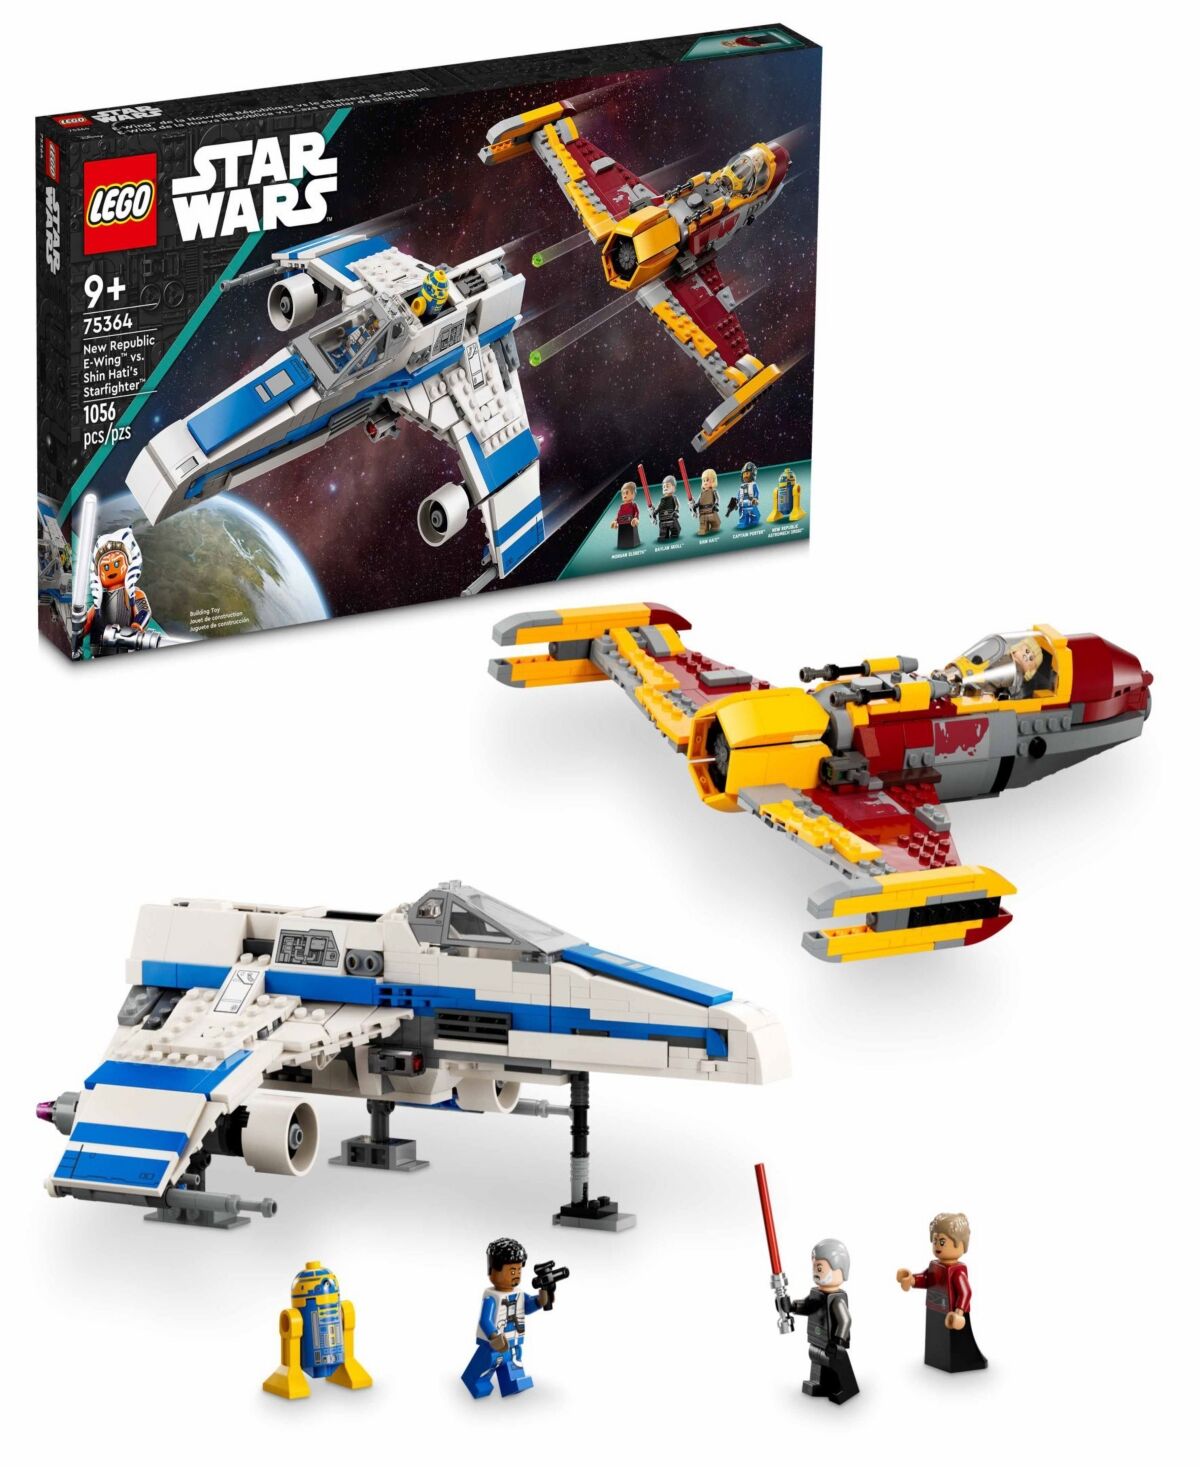 Lego Star Wars 75364 New Republic E-Wing vs. Shin Hati's Starfighter Toy Building Set - Multicolor